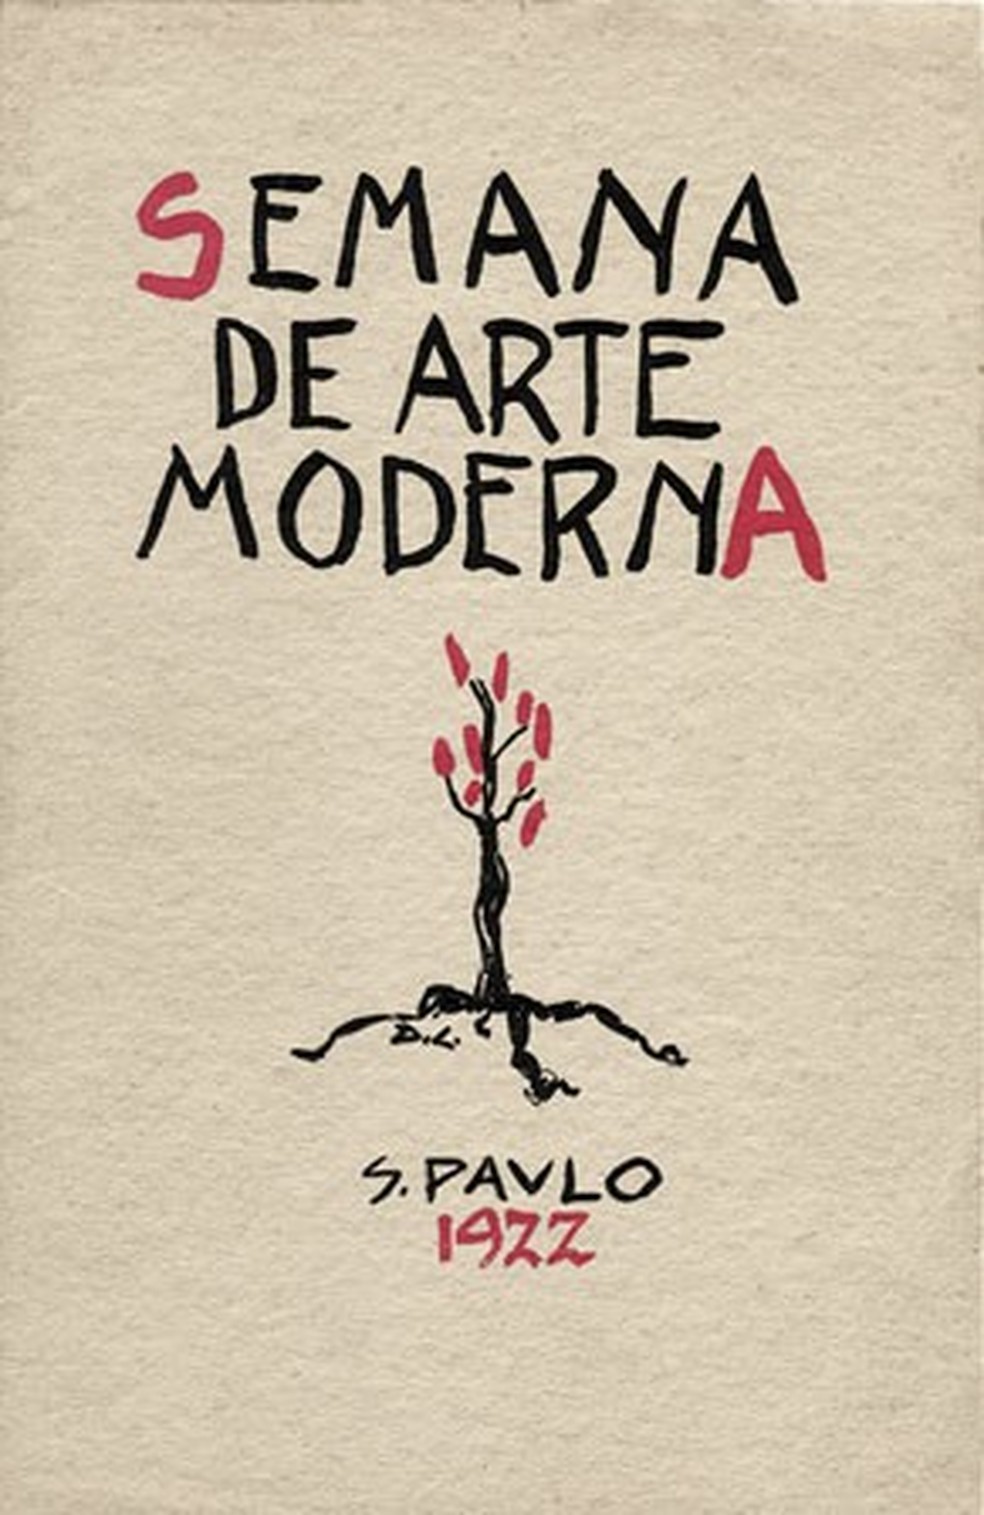 Theatro Municipal tem programação especial para celebrar centenário da Semana  de Arte Moderna de 1922 | O que fazer em São Paulo | G1